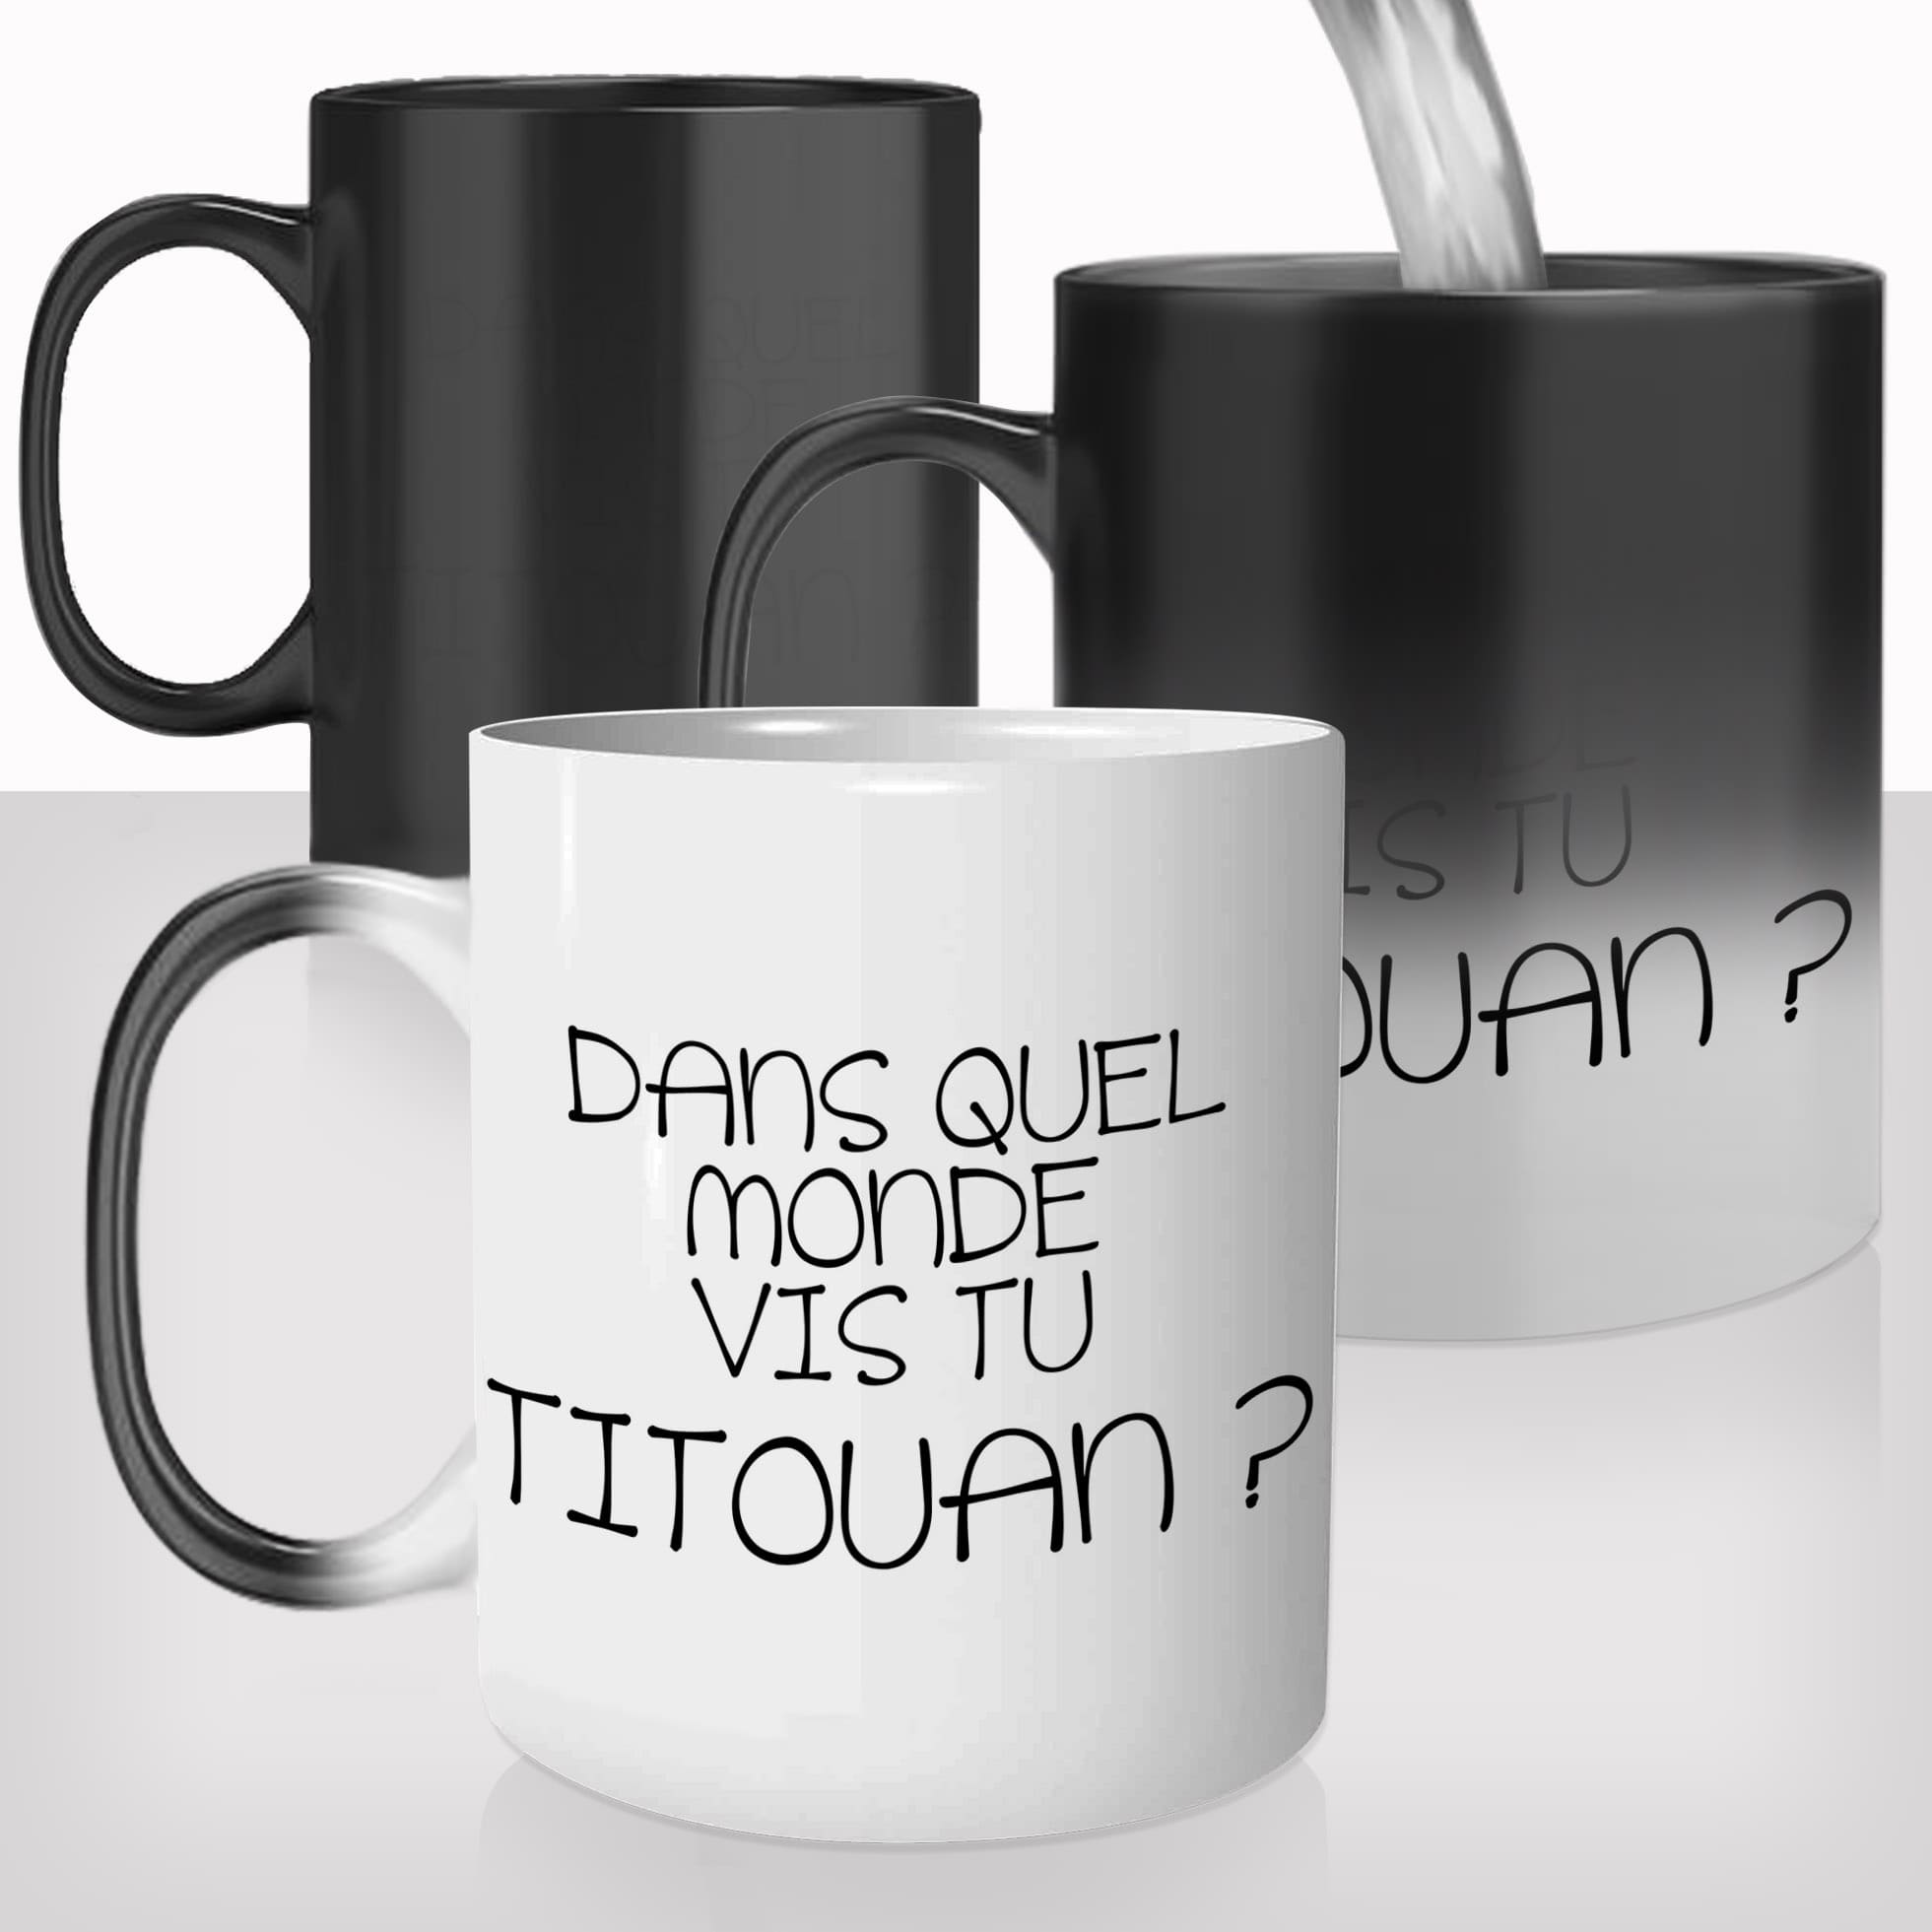 mug-magique-thasse-thermoréactive-thermoréactif-mugs-cadeau-surprise-pas-cher-coach-séduction-charisme-titouan-dans-quel-monde-vis-tu